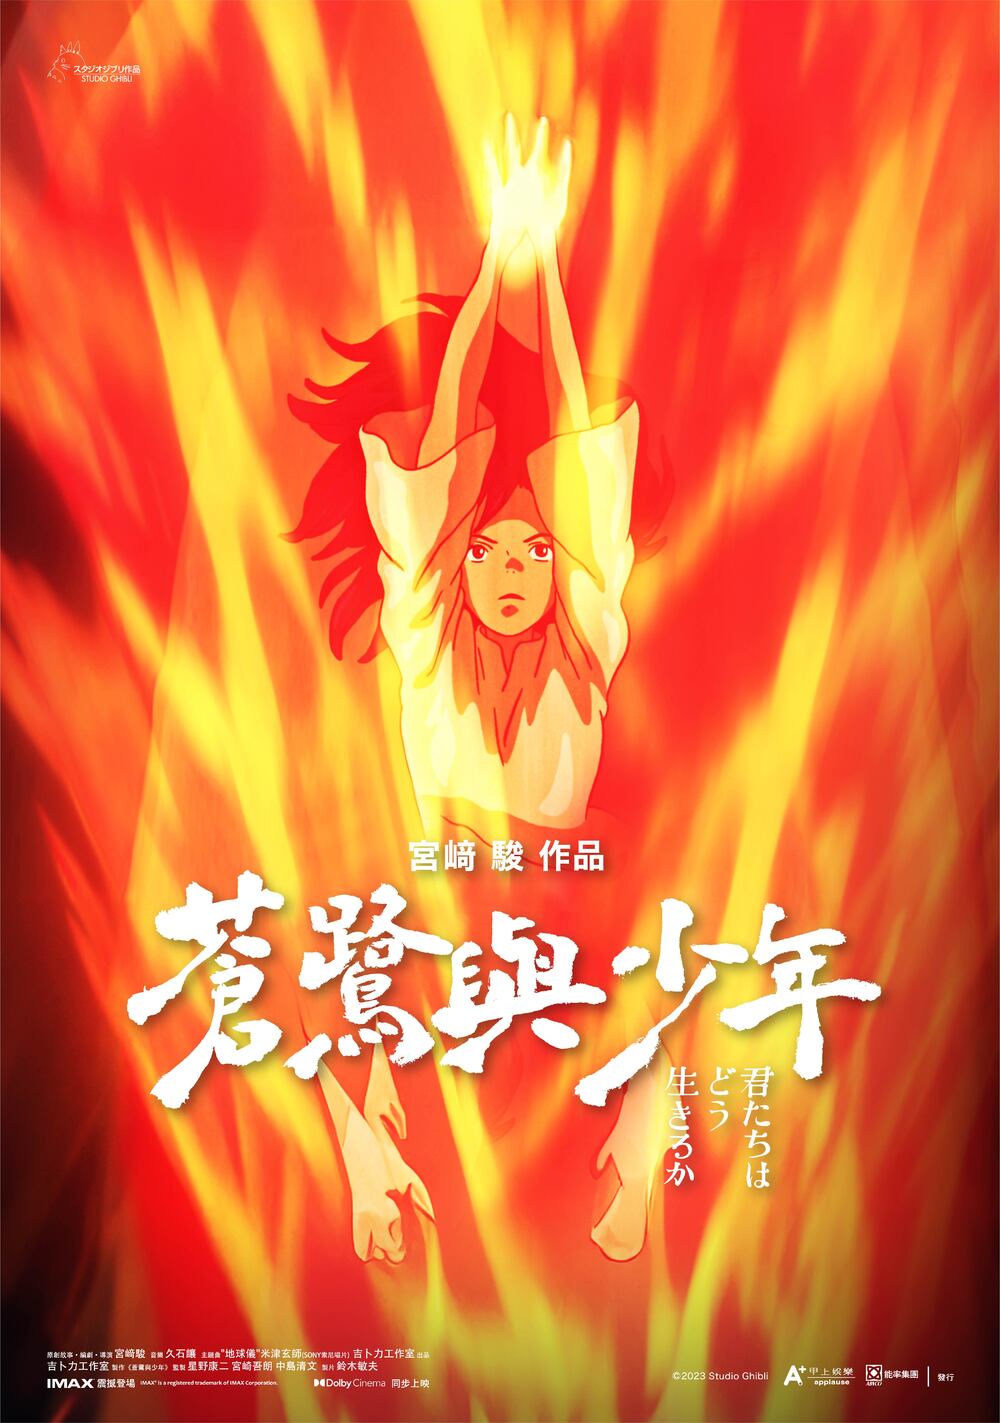 台灣限定「火美發威版」海報為第五周購票特典 / 甲上娛樂 提供